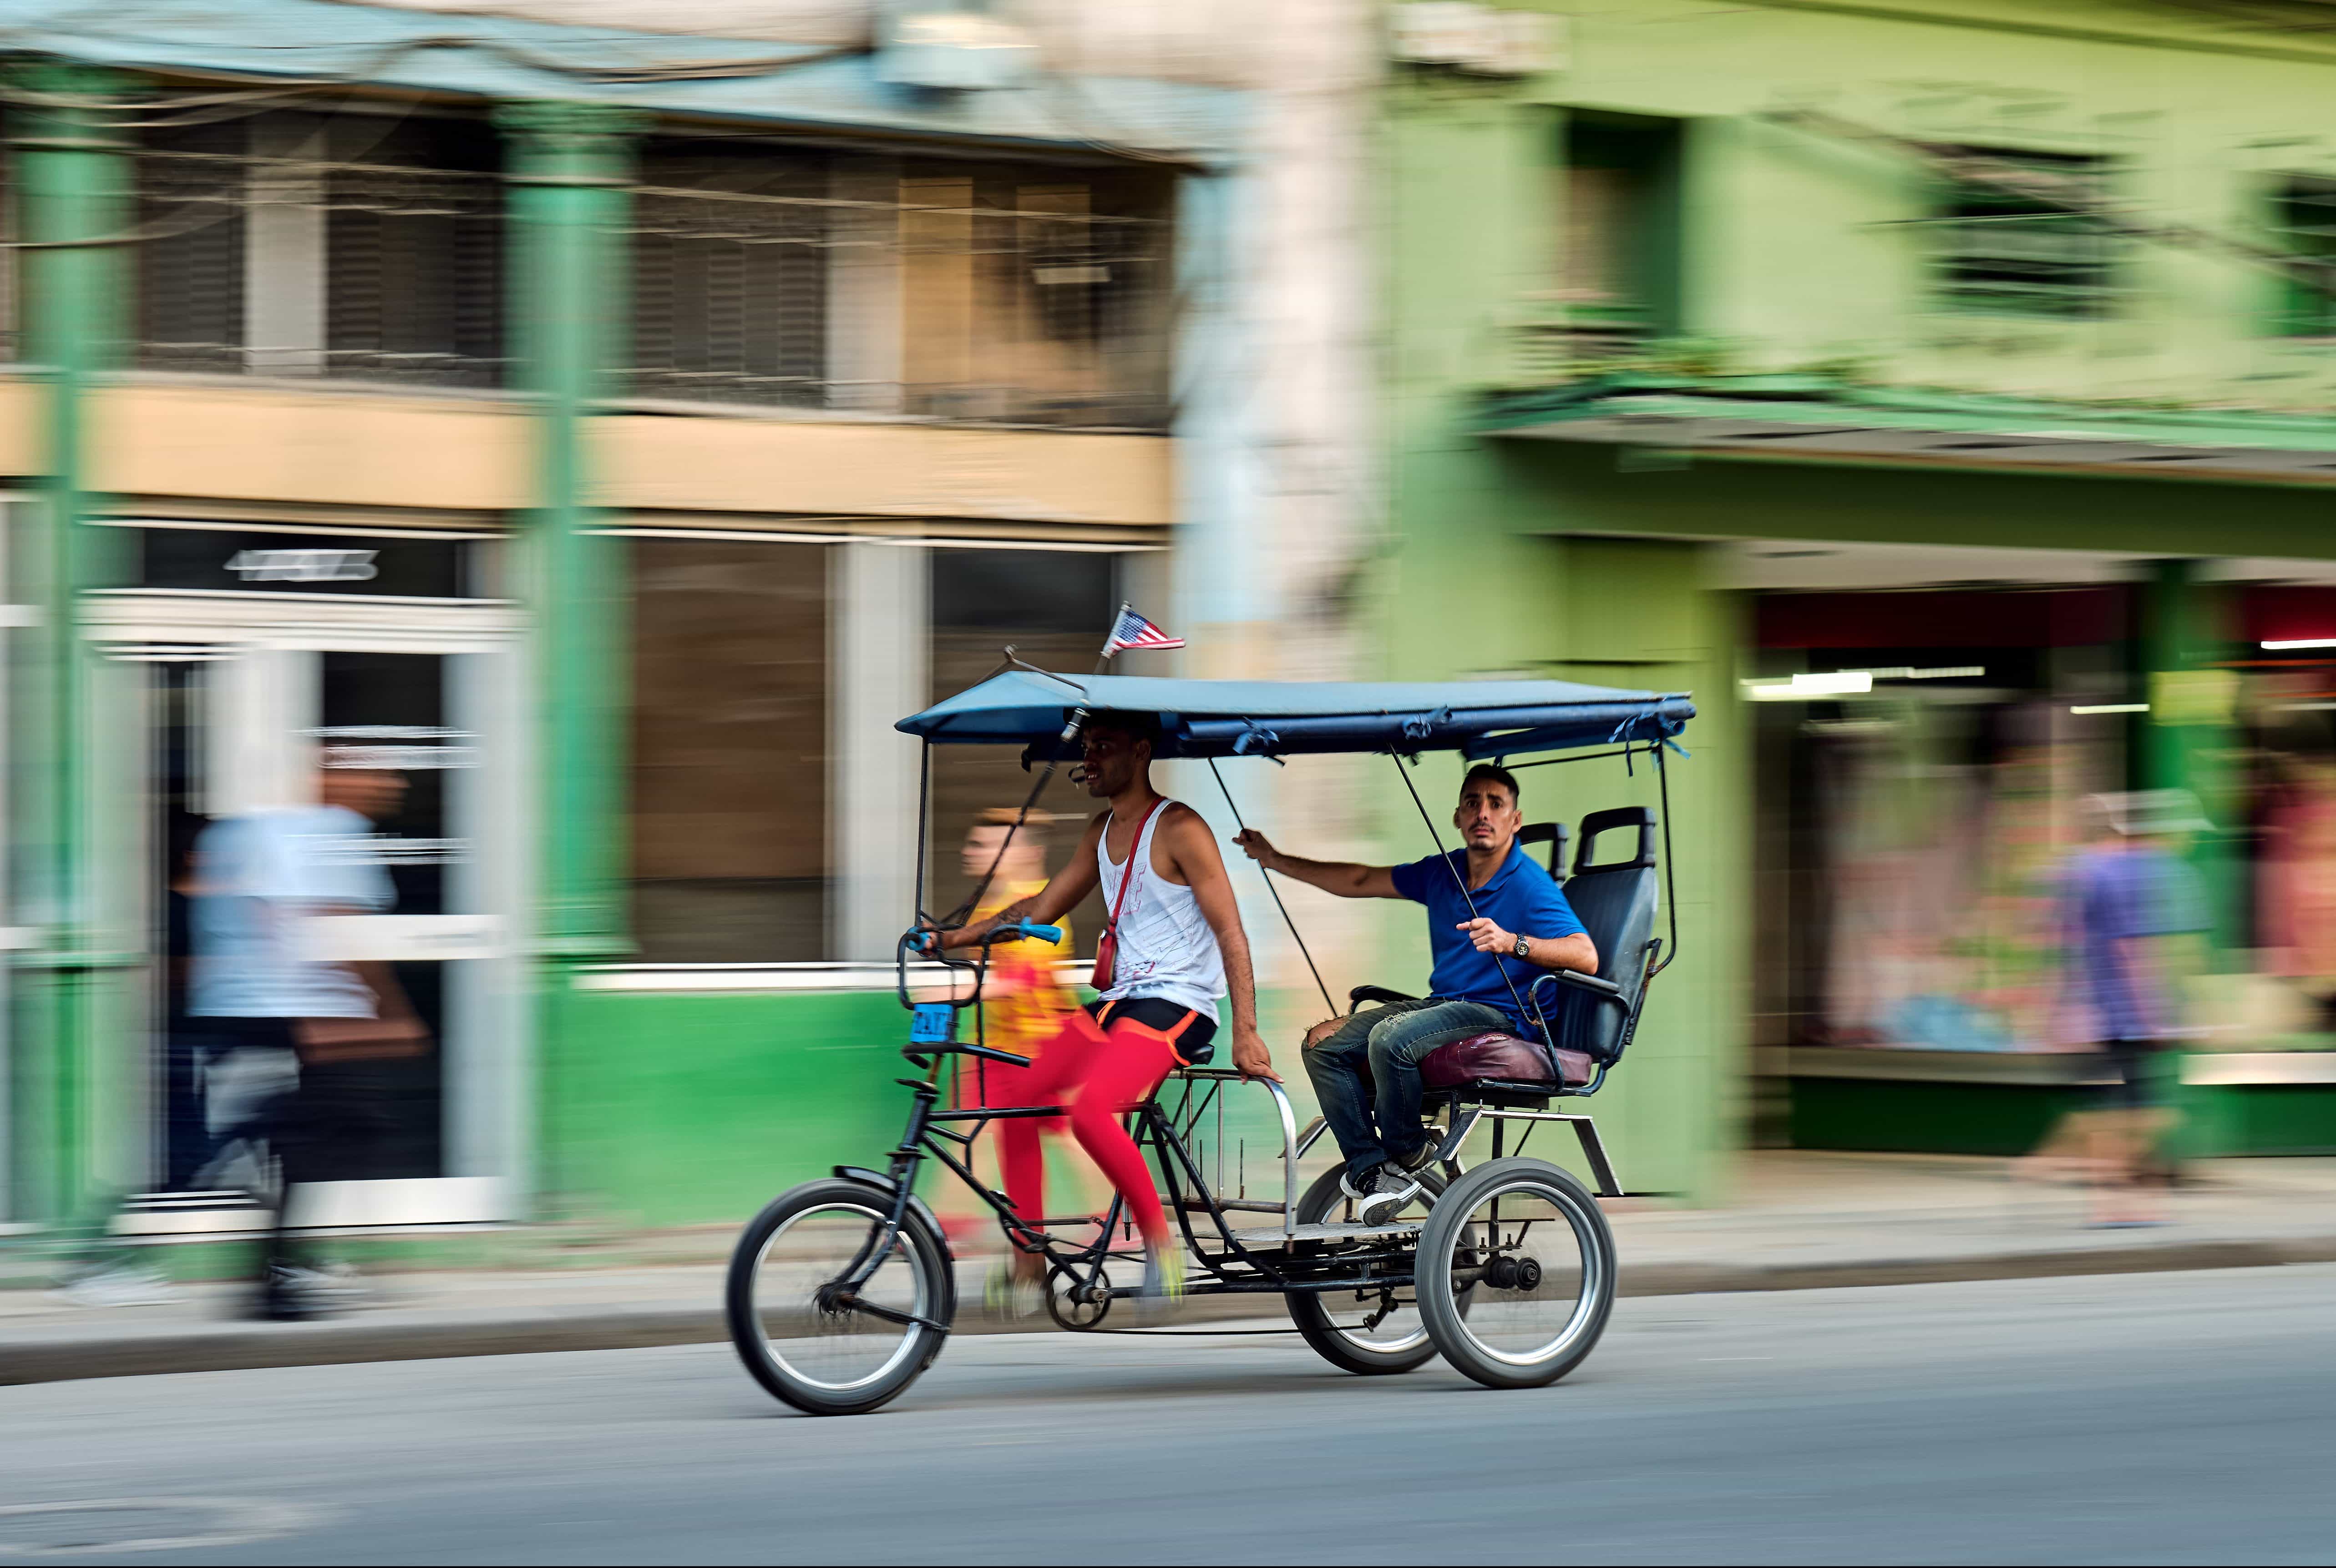 Bicitaxi in Havana, Cuba | Credit: Flickr user Pedro Szekely